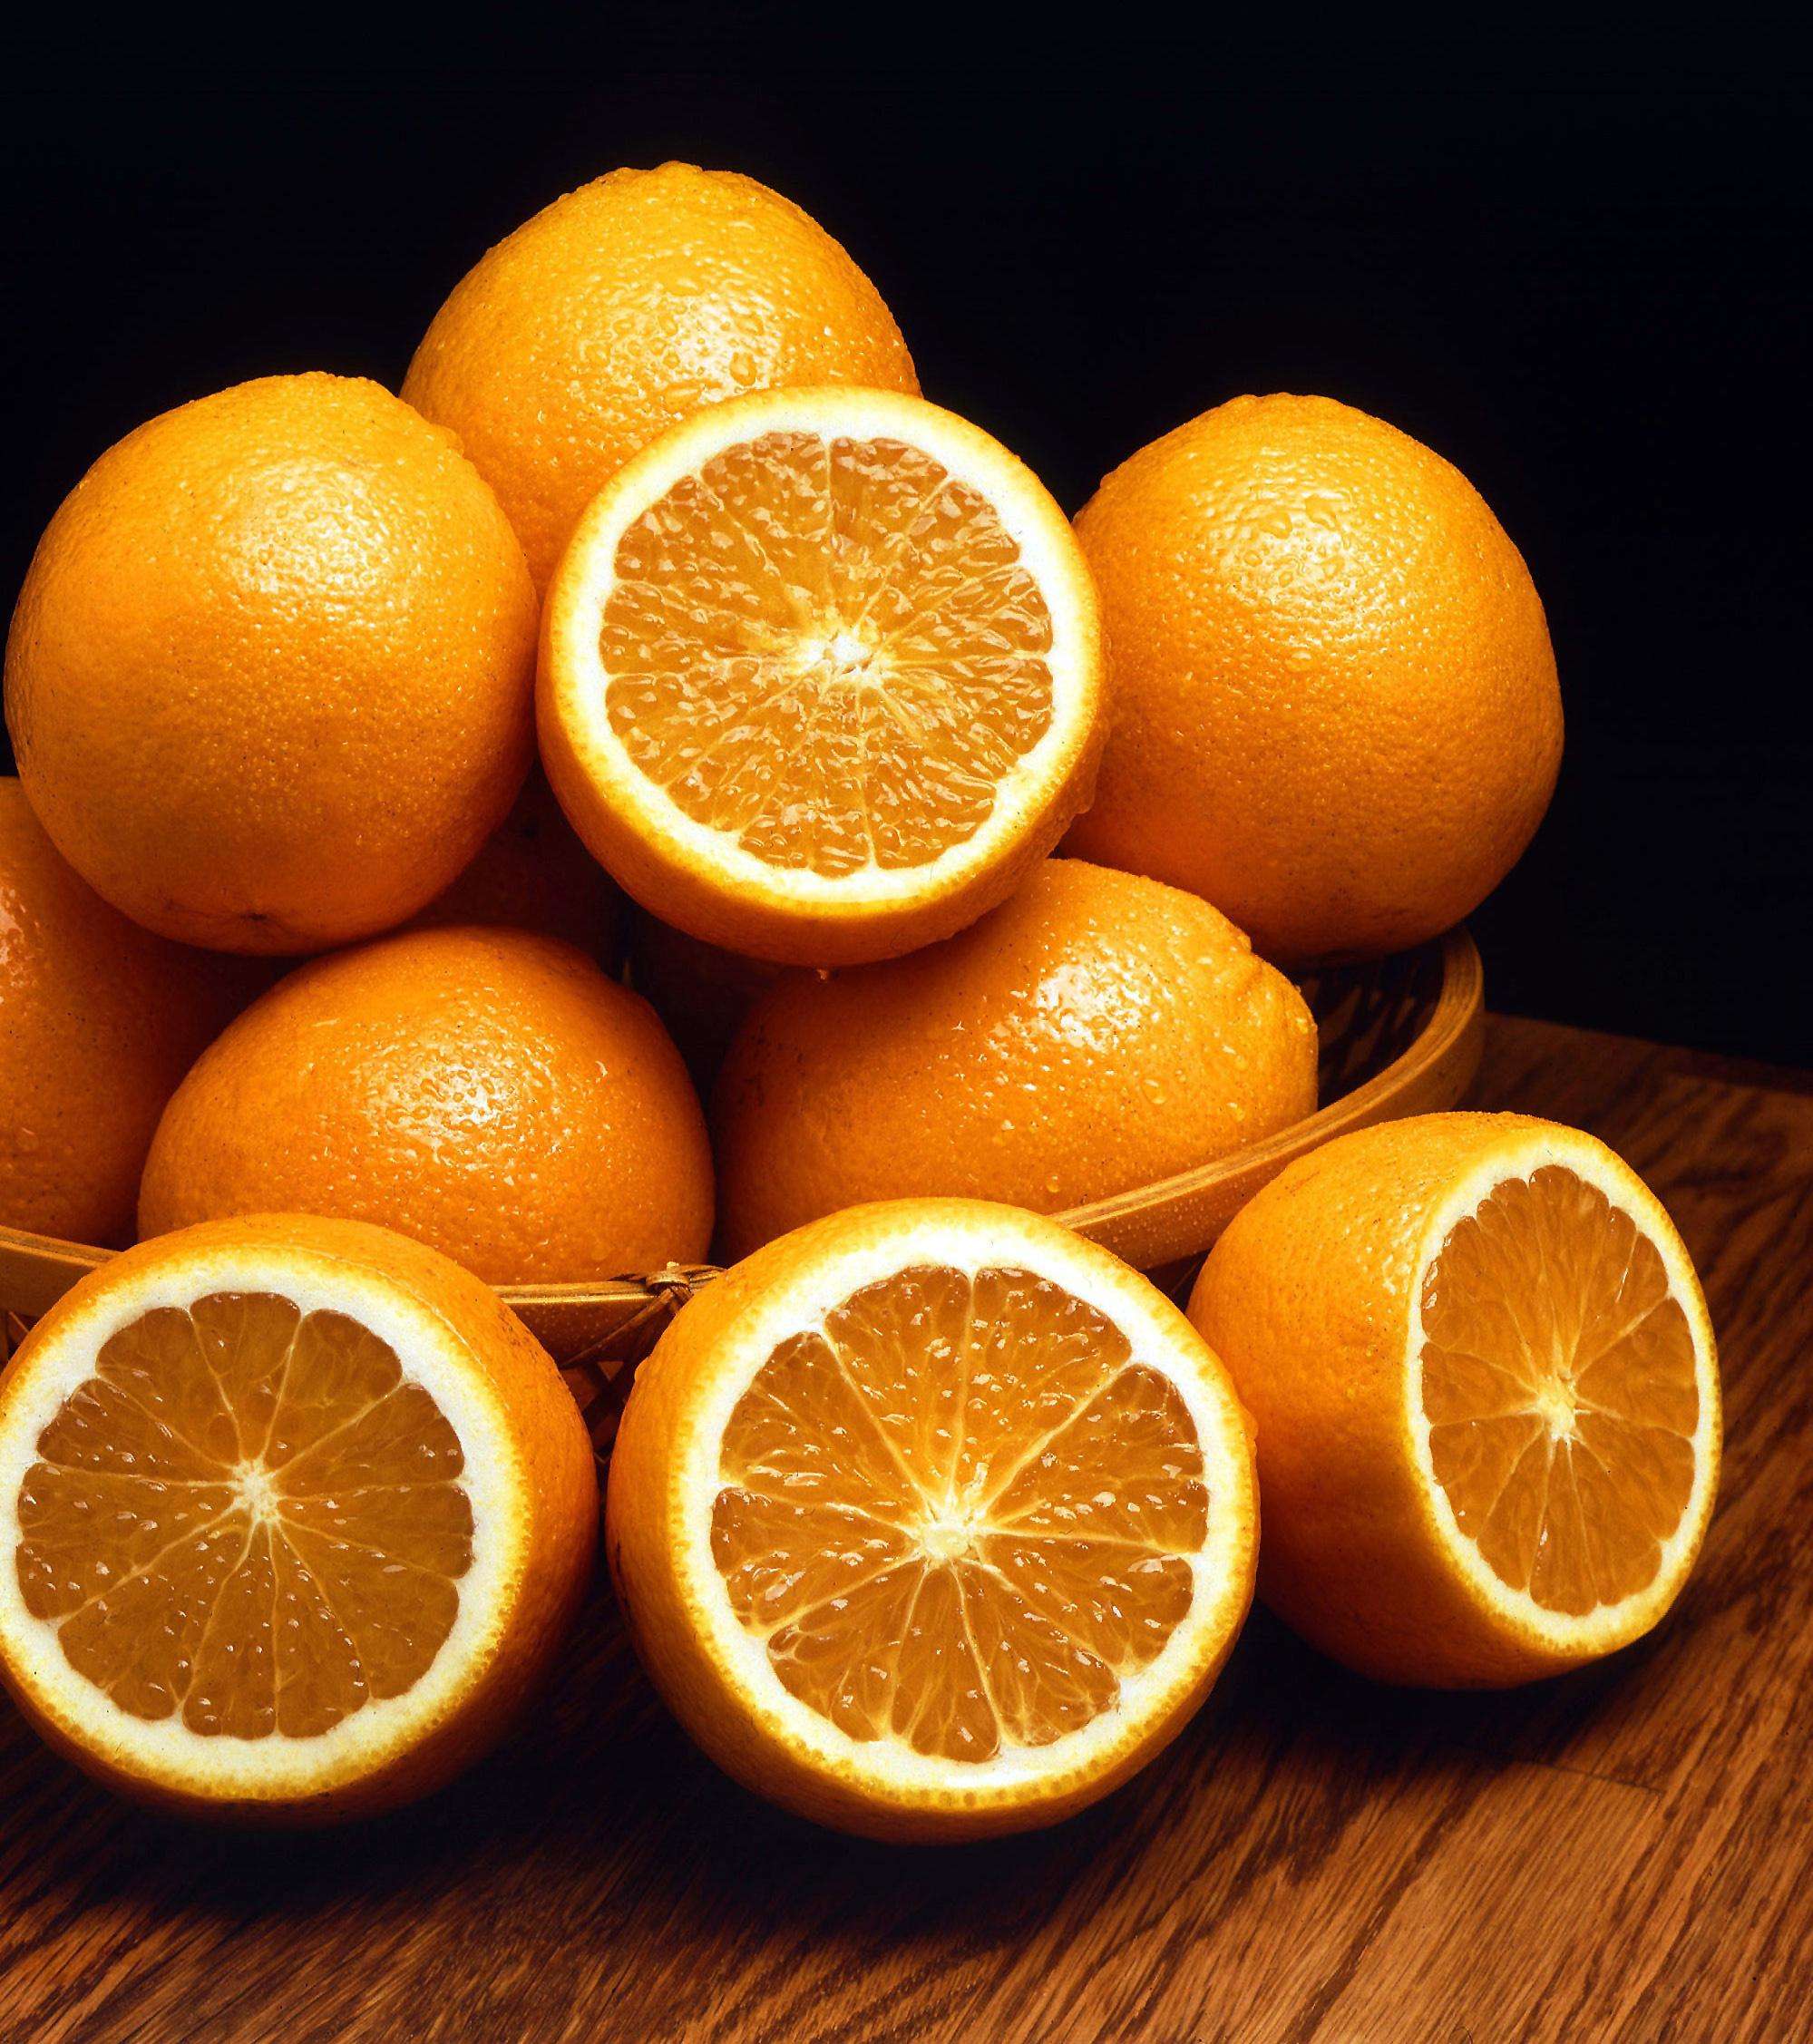 संतरा ही नही संतरे का छिलका भी है सेहत के लिए फायदे मंद